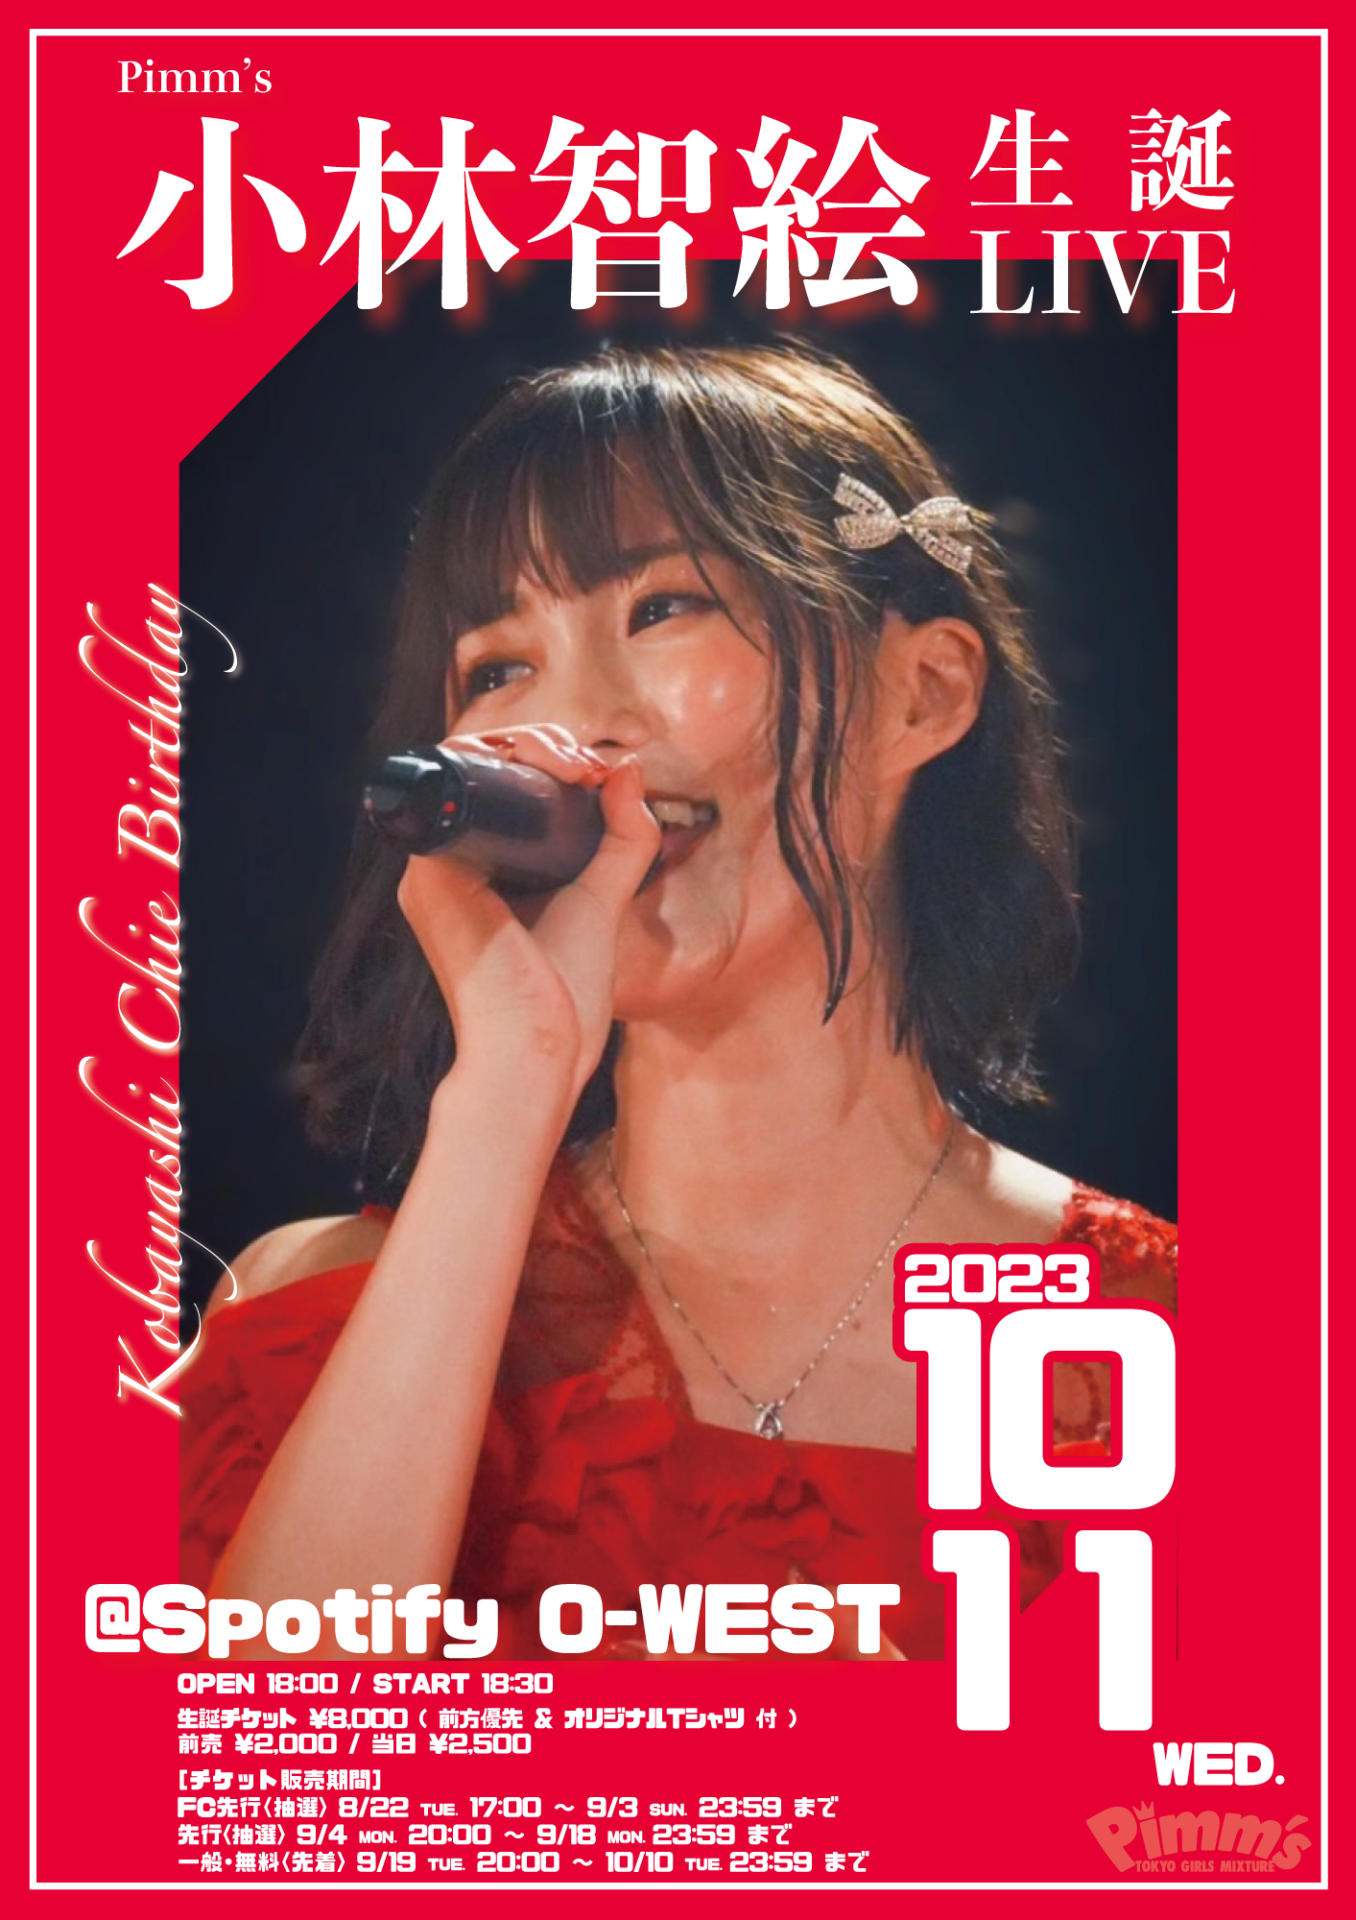 Pimm's 小林智絵 生誕LIVE | Spotify O-EAST・O-WEST・O-Crest・O-nest